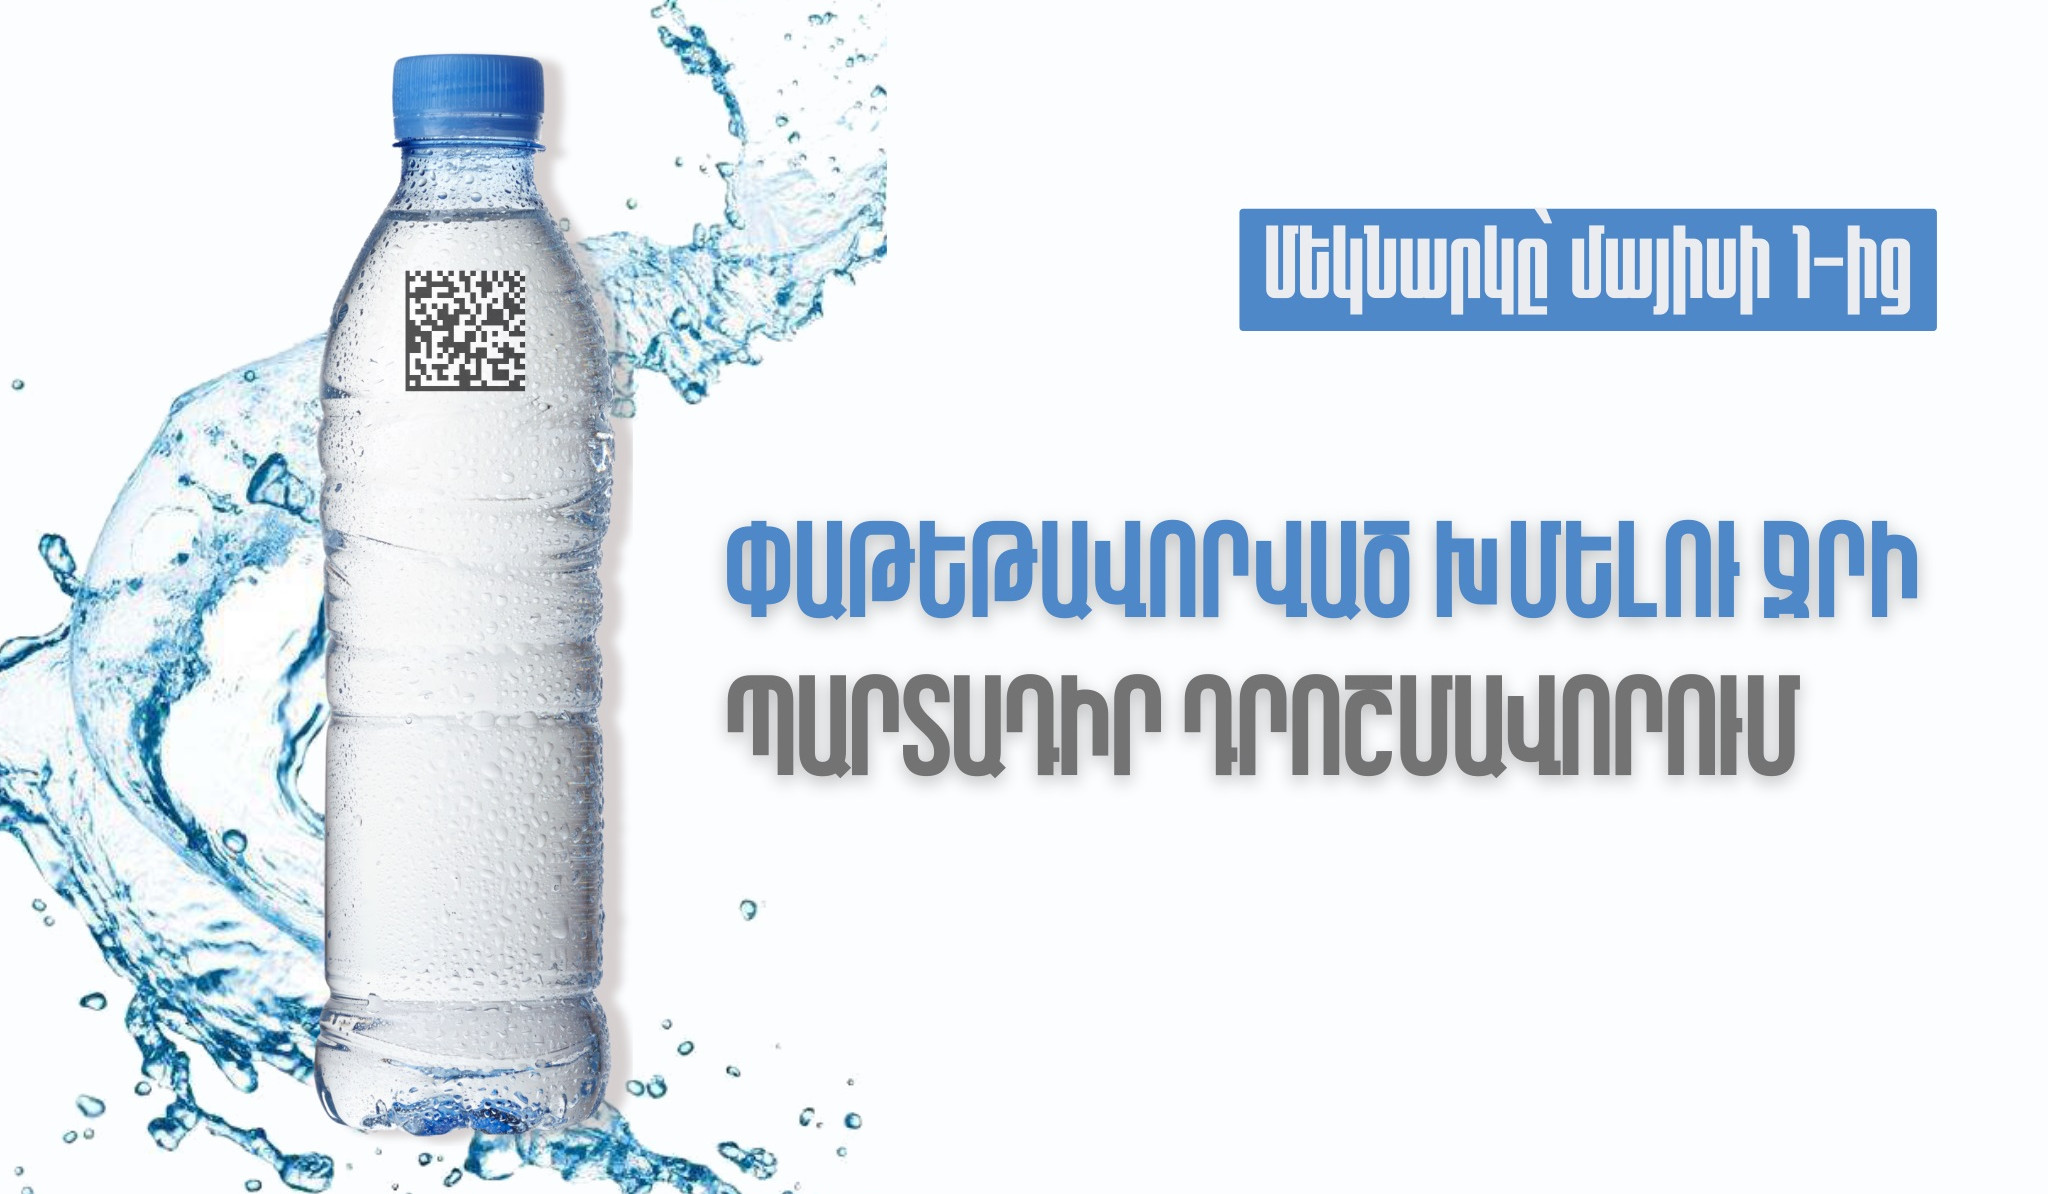 Հայաստանում մայիսի 1-ից կգործի փաթեթավորված խմելու ջրի պարտադիր դրոշմավորման պահանջը